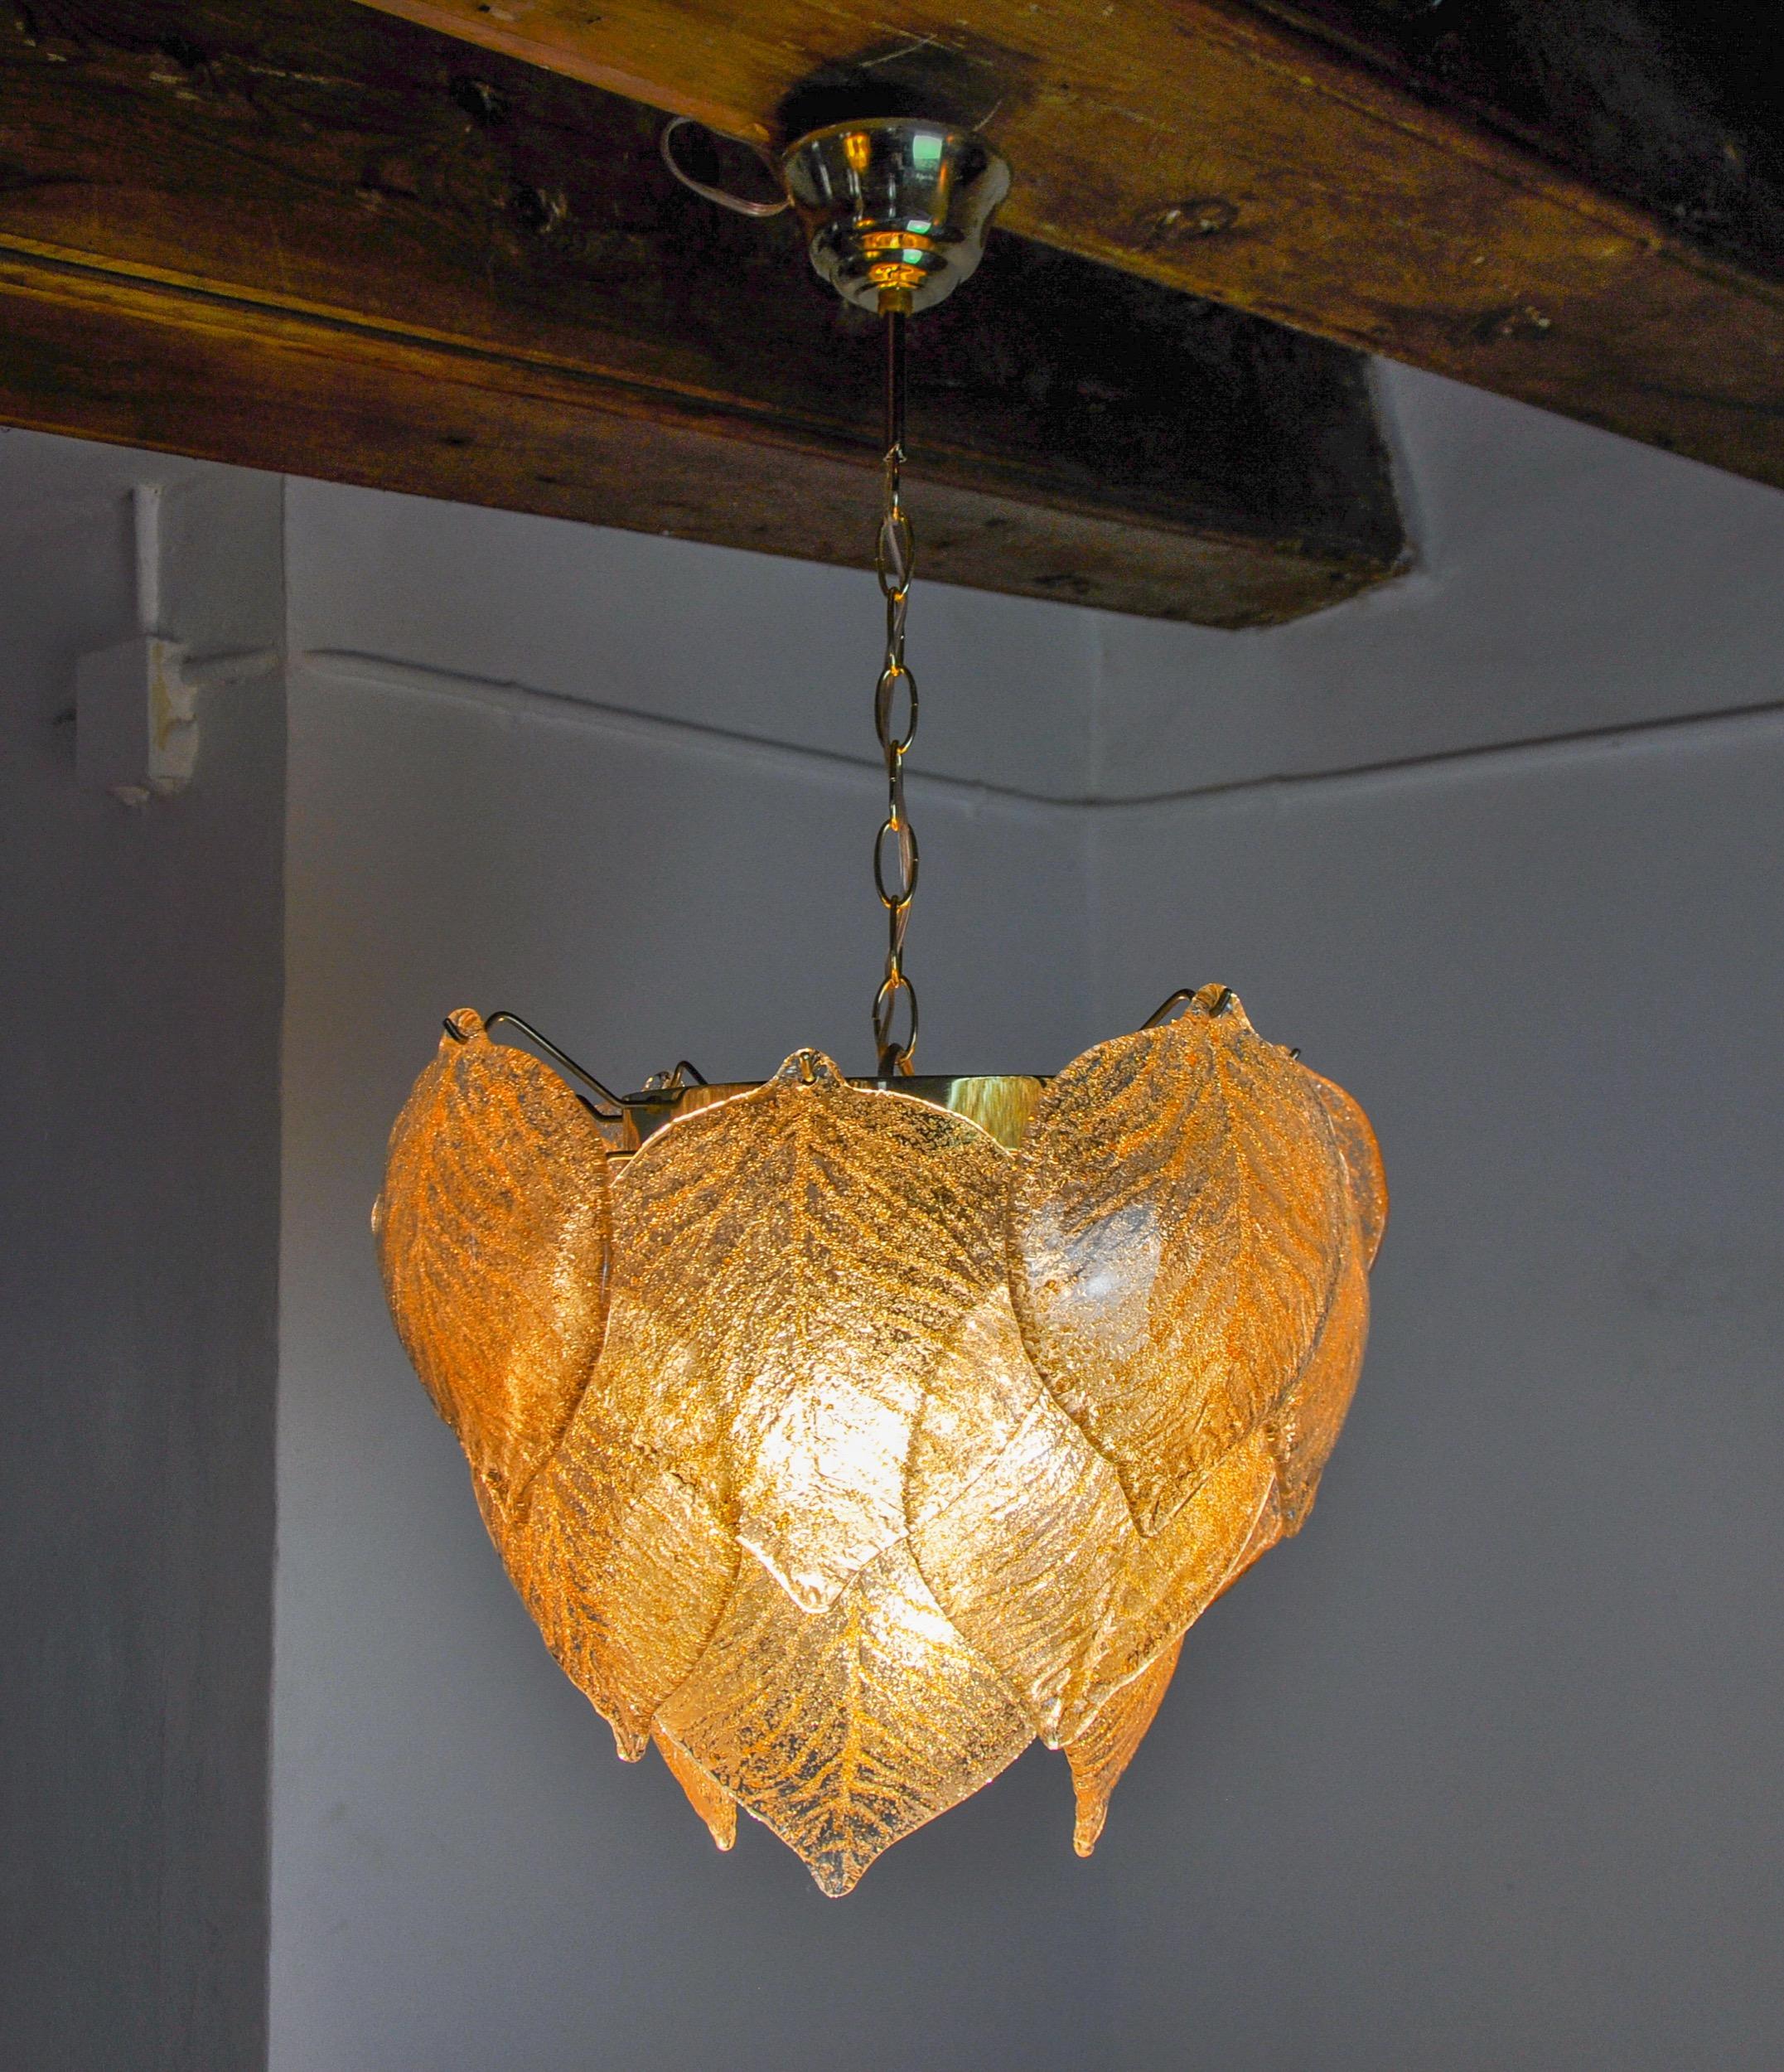 Superbe et rare lustre Murano Mazzega produit en Italie dans les années 70. Cristaux en verre de Murano dépoli, en forme de feuilles réparties sur une structure en métal doré. Objet unique qui illuminera à merveille et apportera une véritable touche